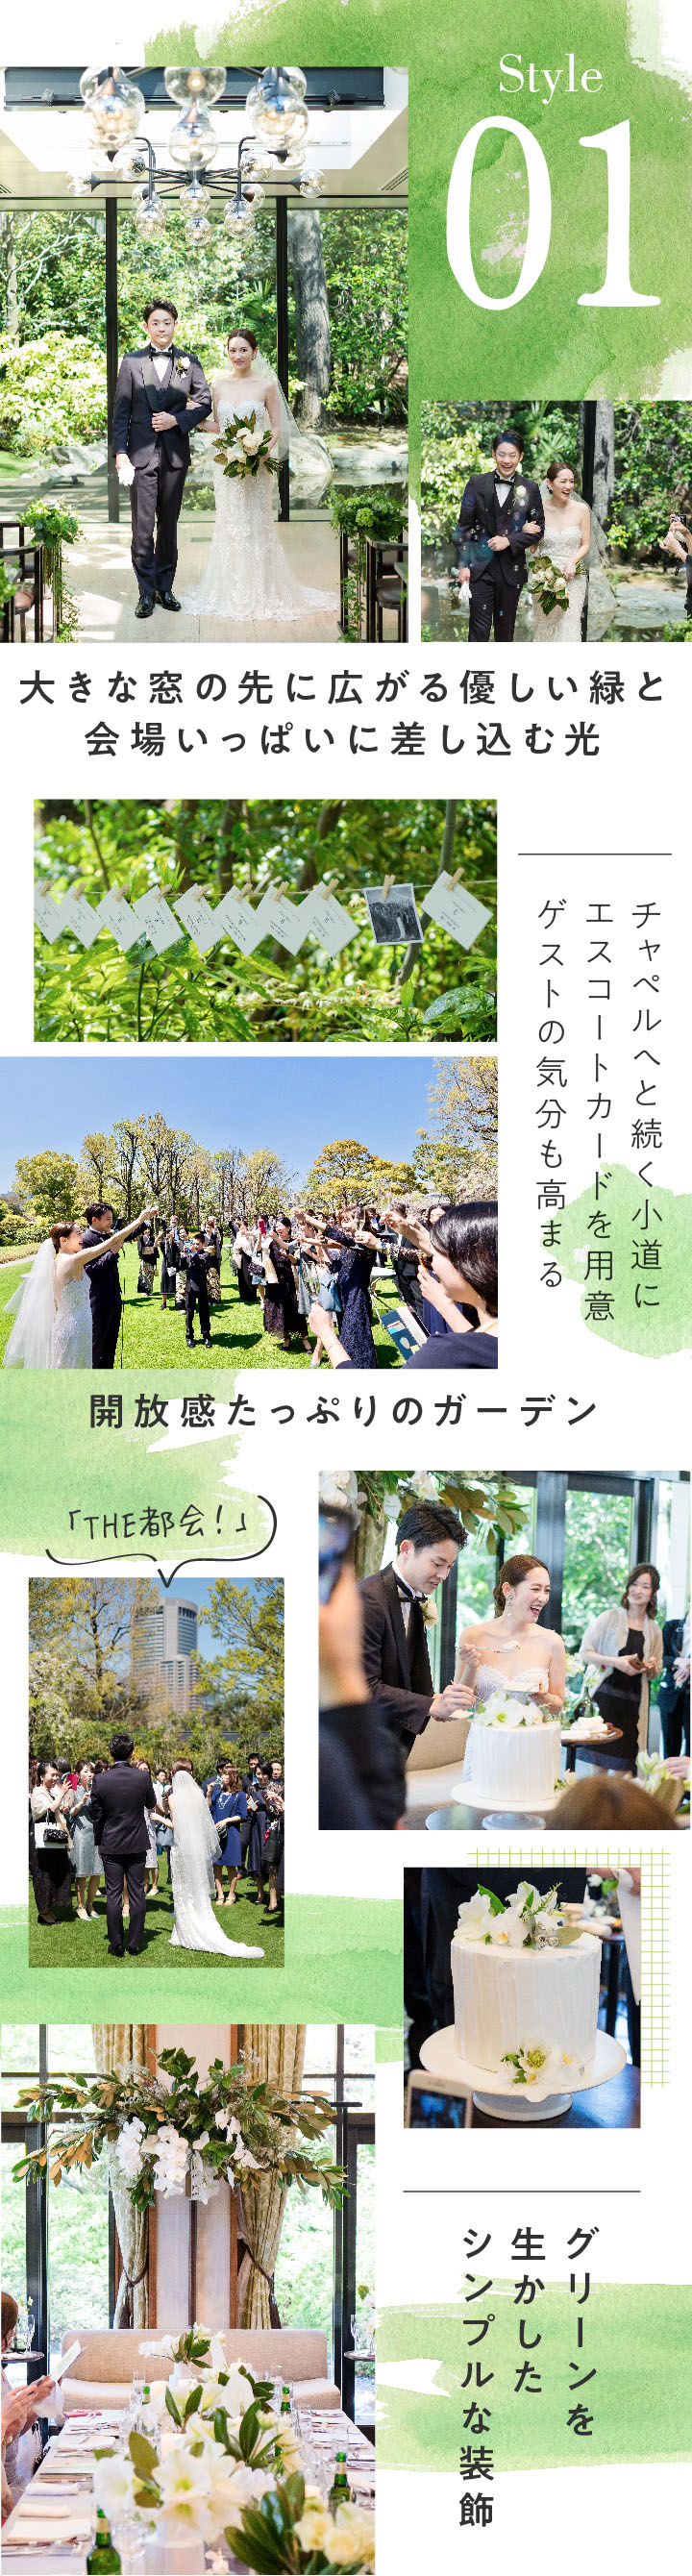 横山 緑 結婚 式